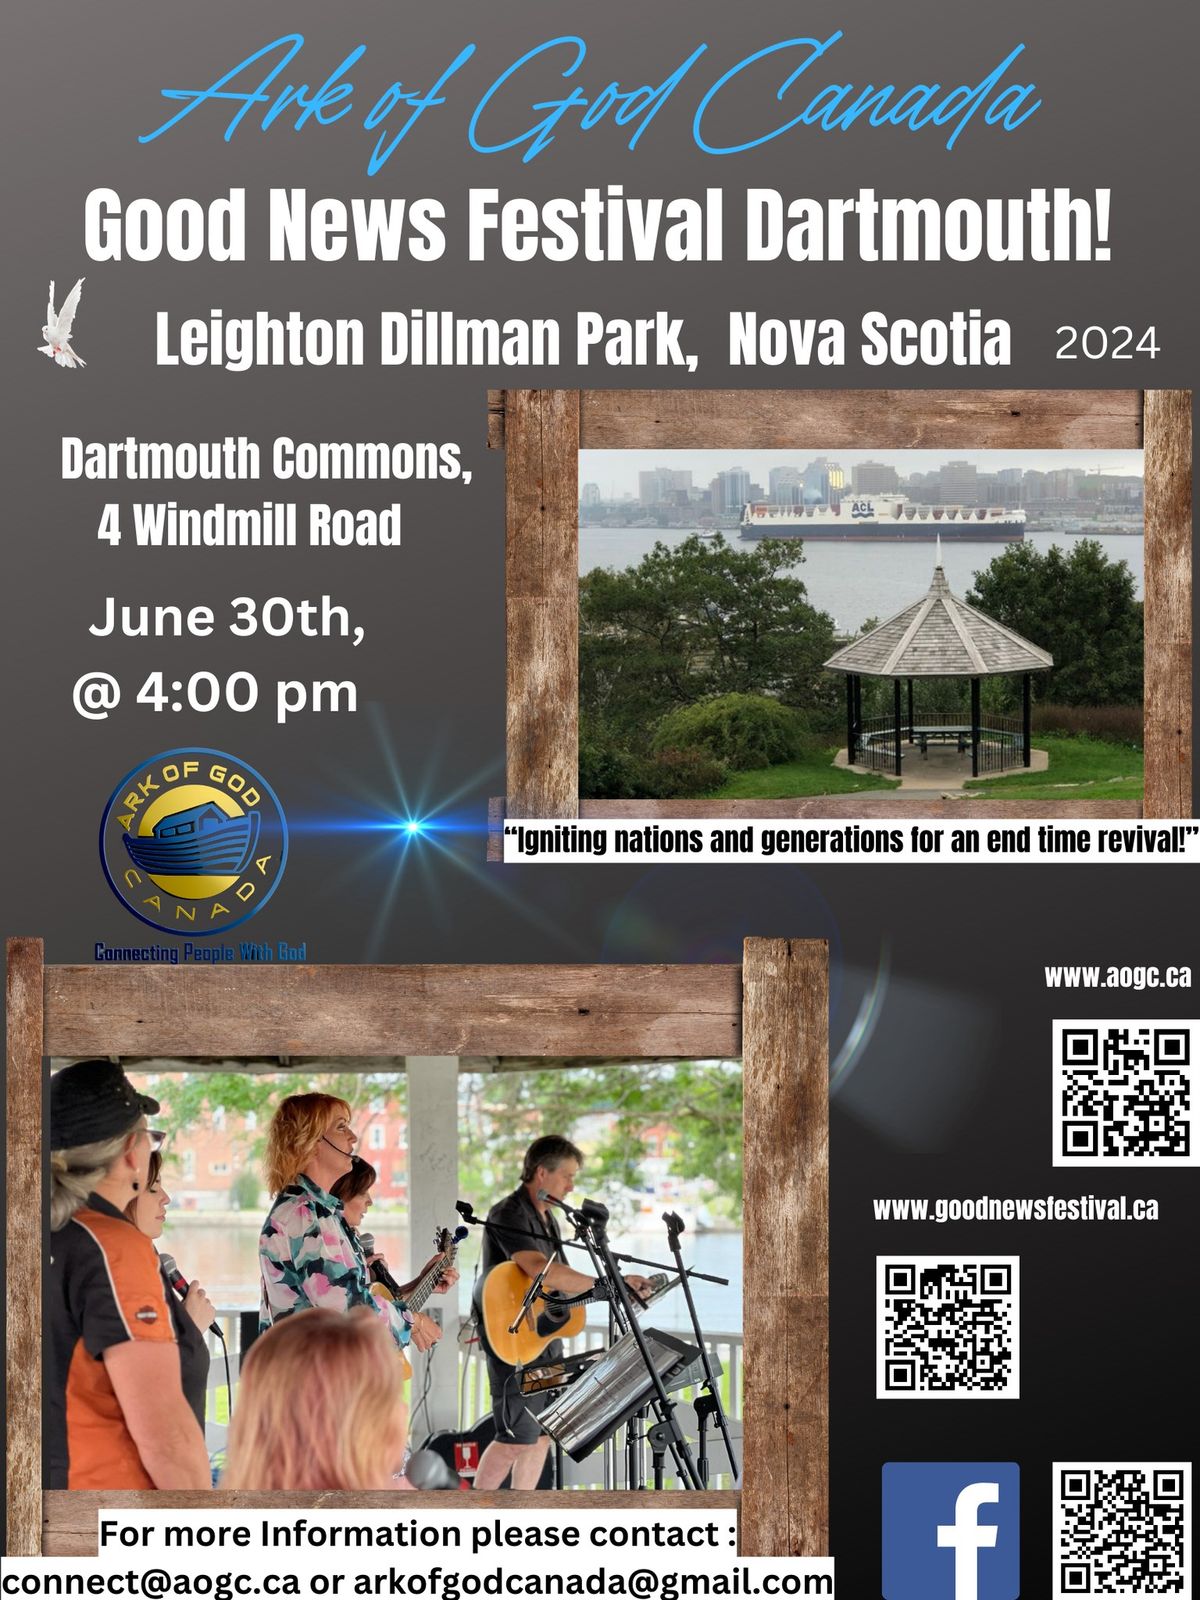 Good News Festival Dartmouth Nova Scotia!! 